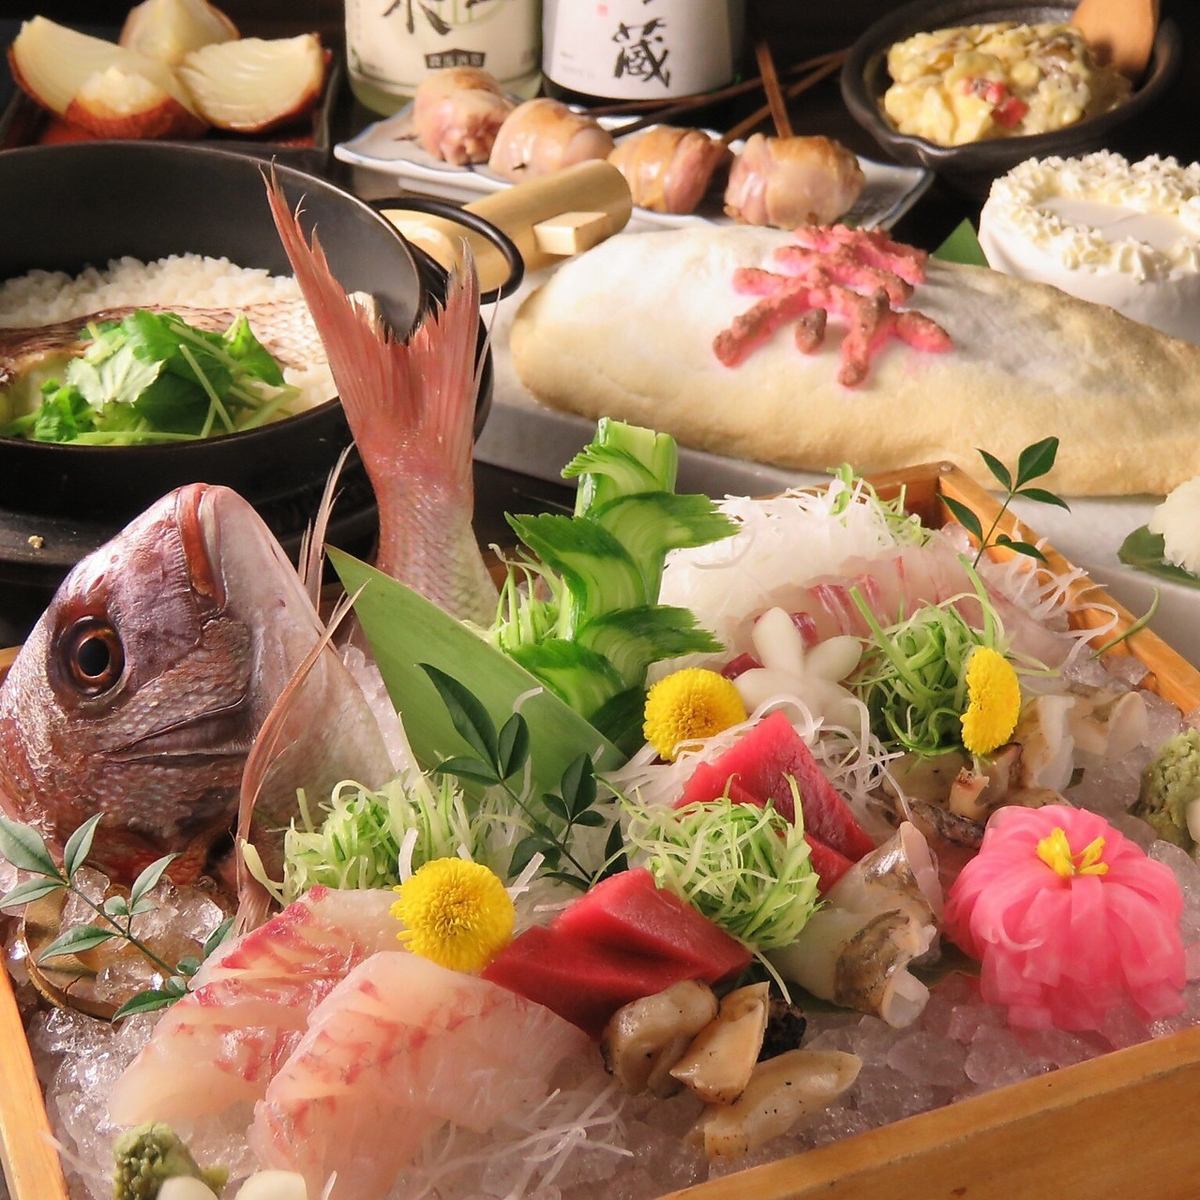 包房◎新的用盐锅用木槌敲打的烤鲷鱼150分钟无限畅饮套餐6,000日元